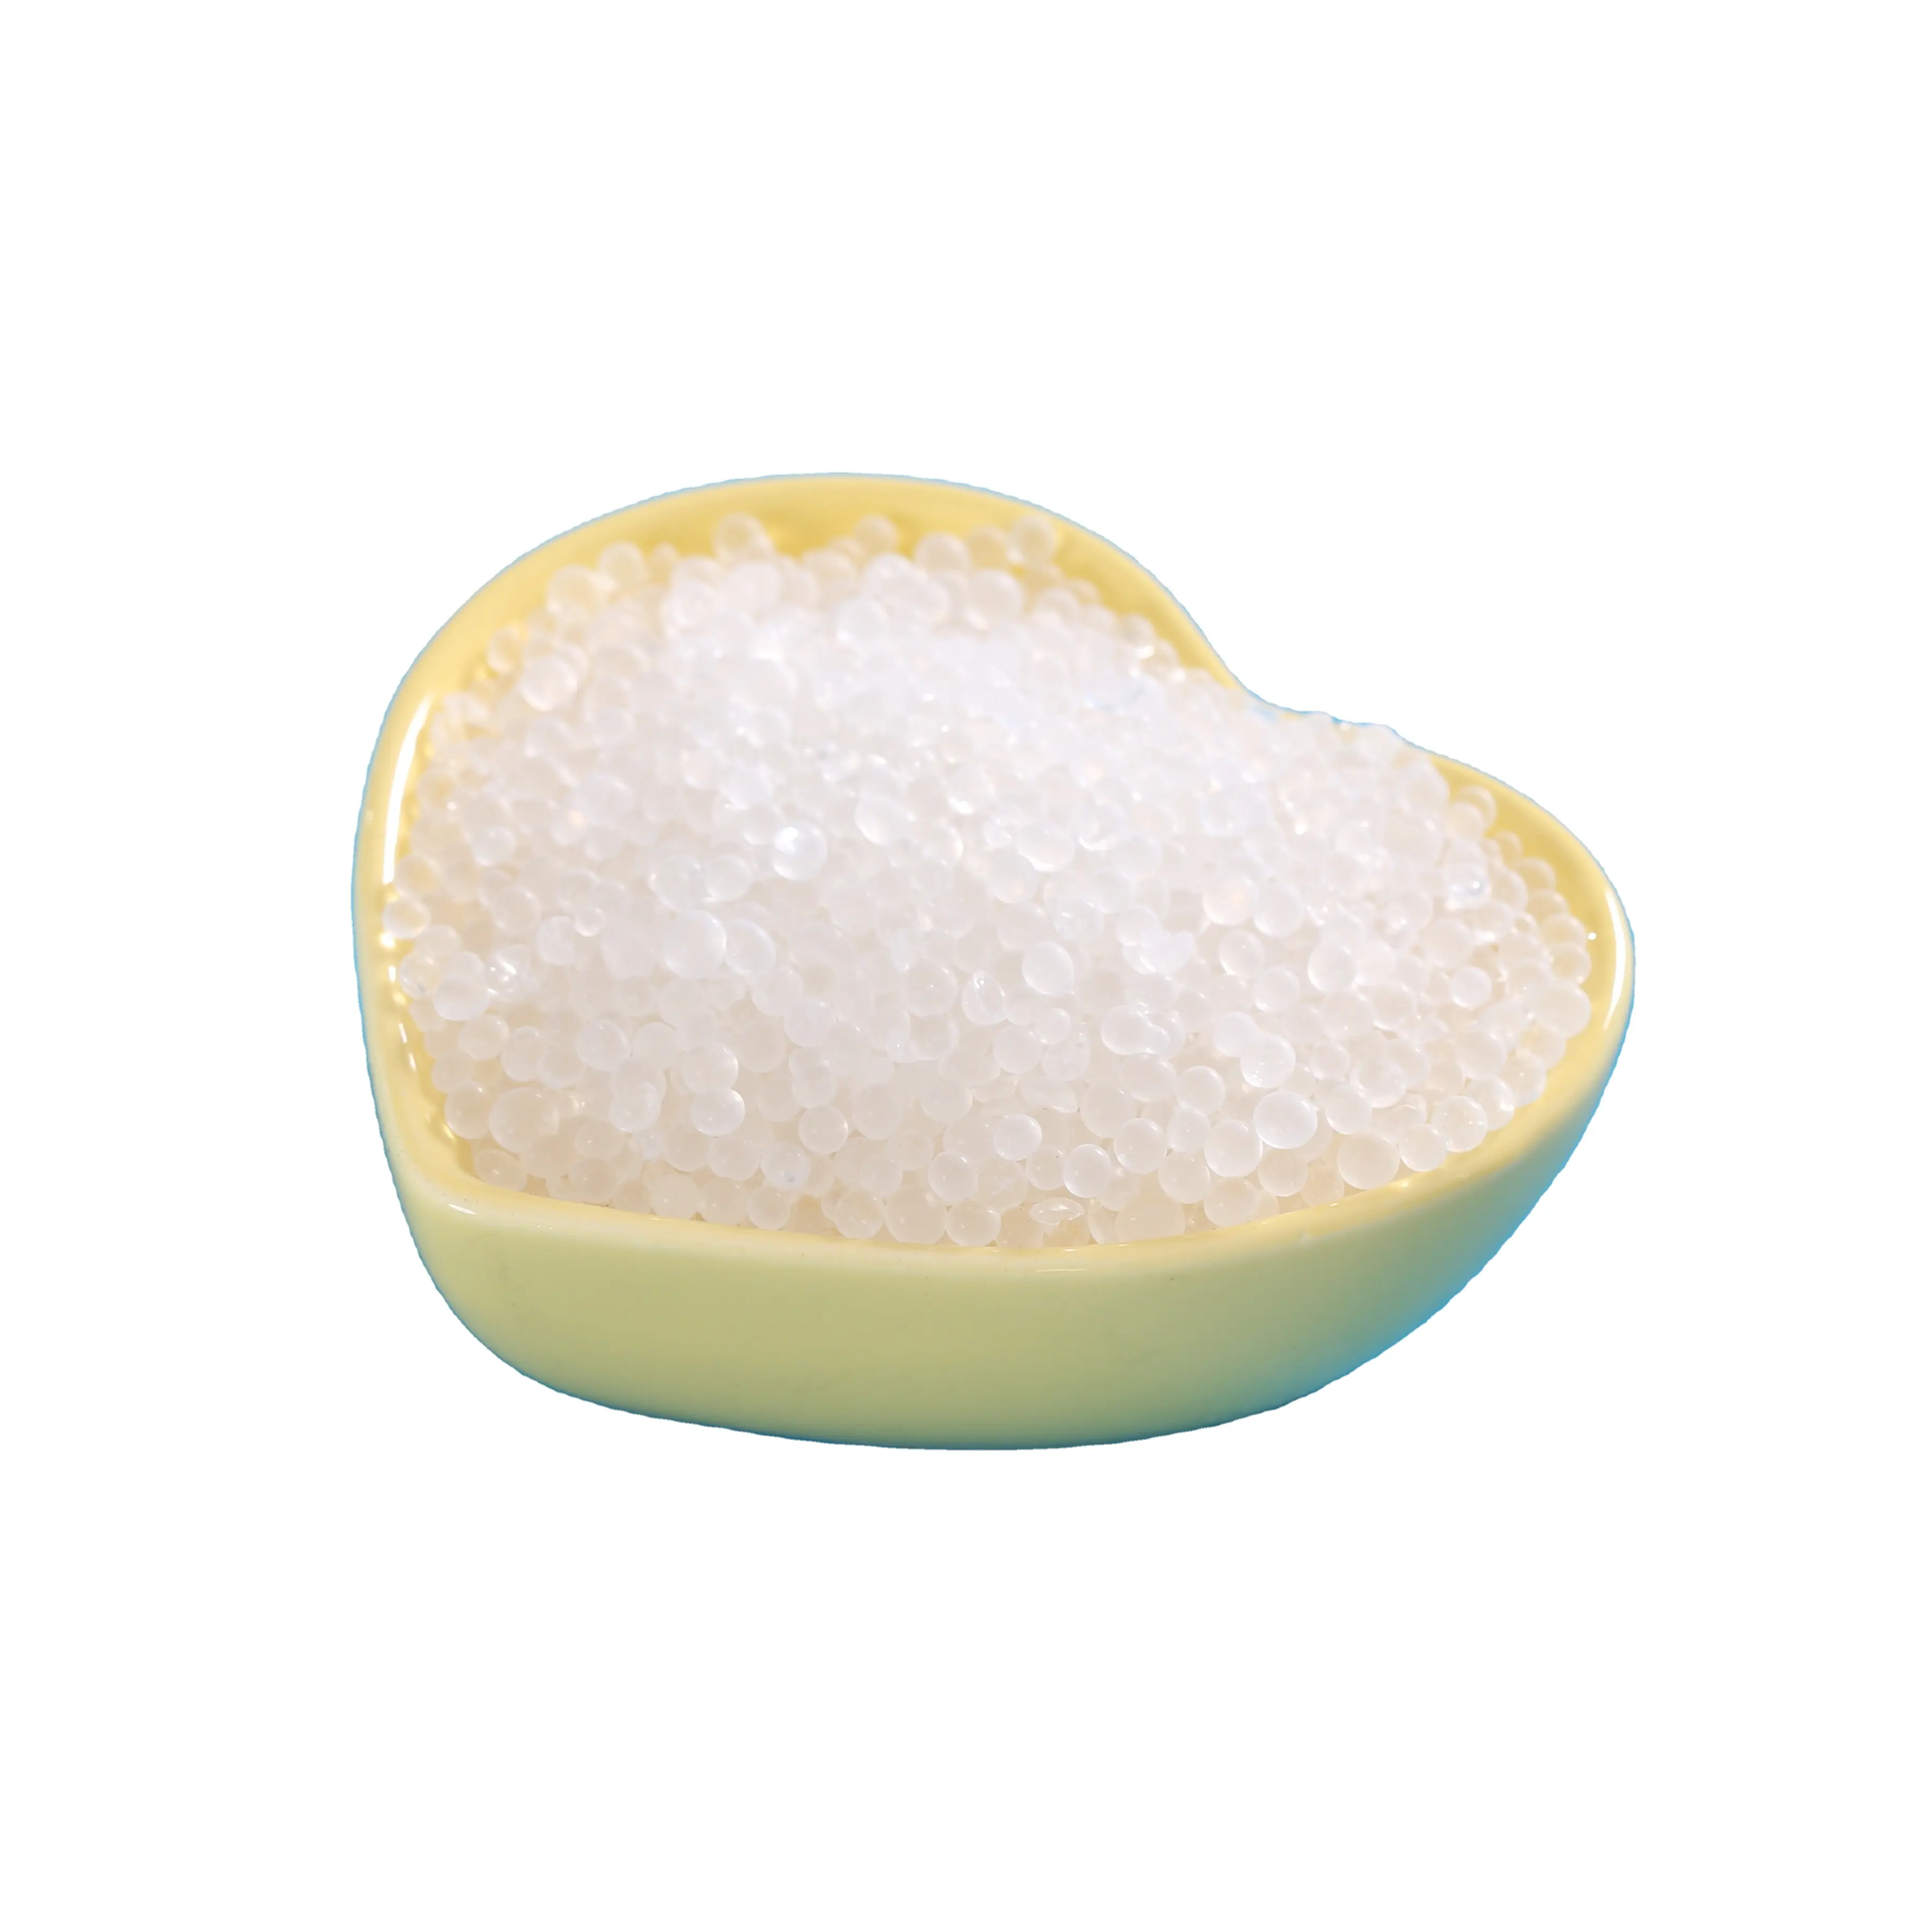 Absorbierbares King hochwertiges Lebensmittel-Klasse-Silica-Gel in Aihua-Papier 5 Gramm Silikagel-Trocknungsmittel-Verpackung